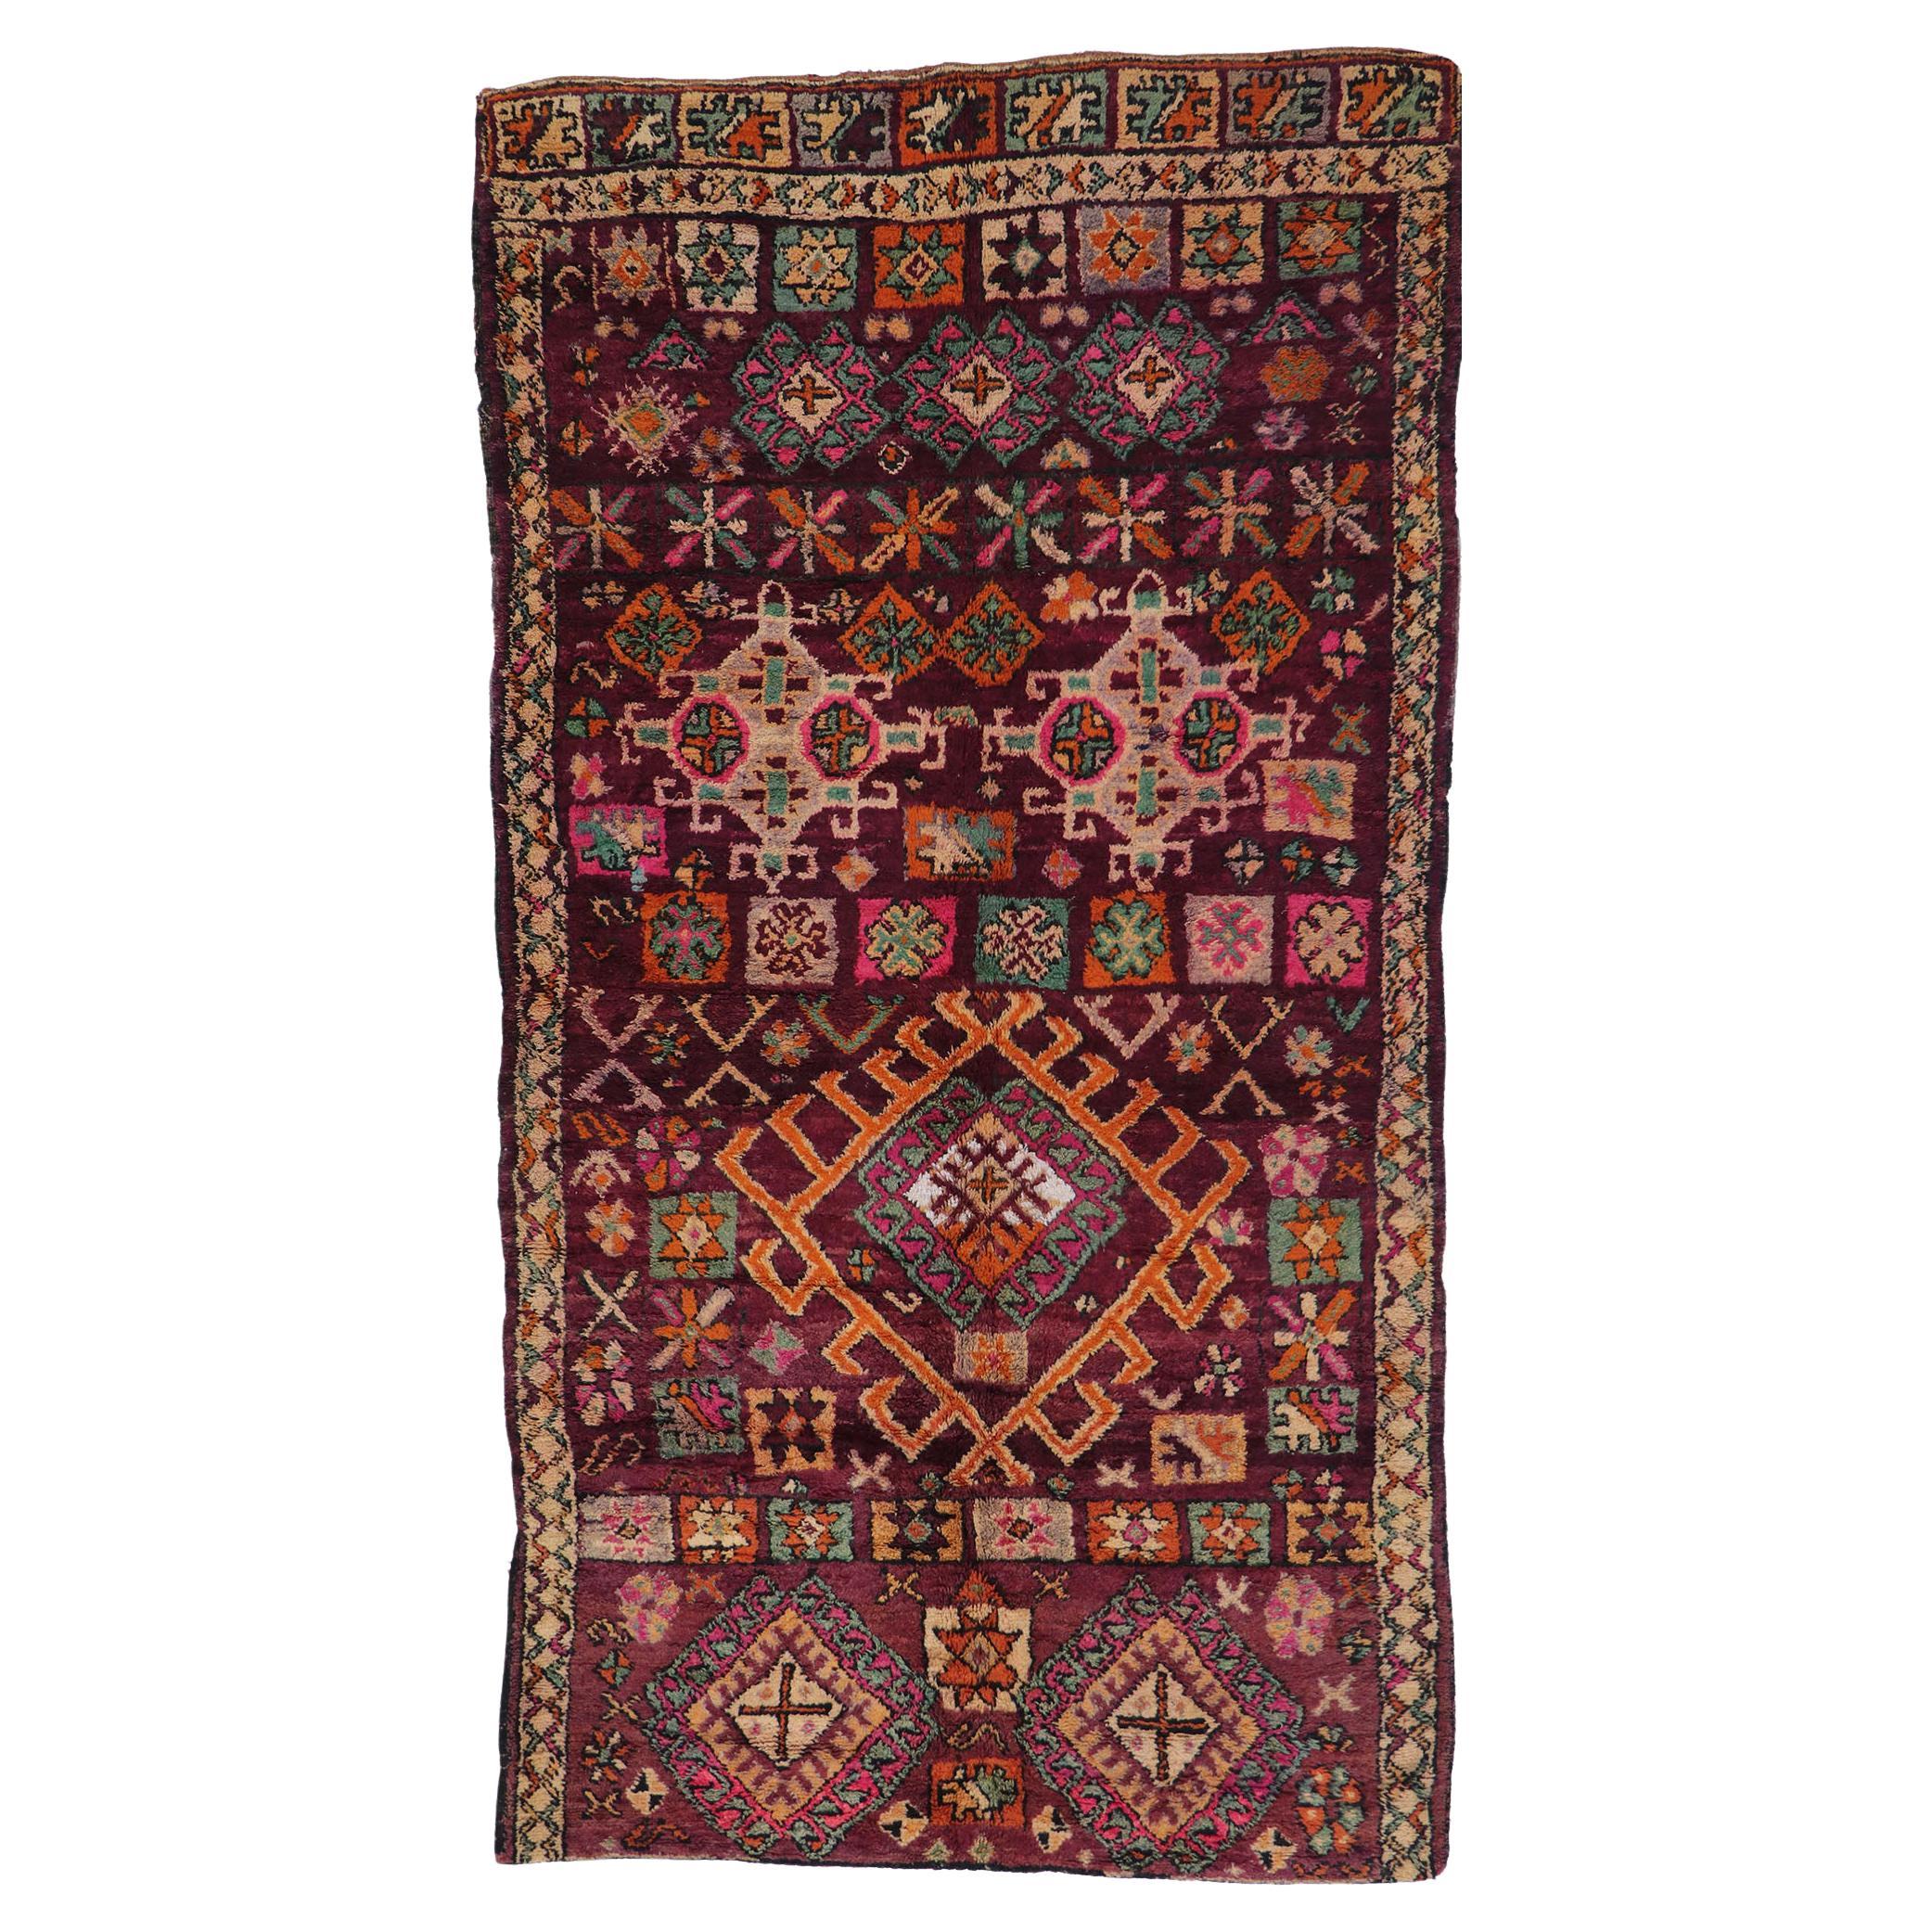 Marokkanischer Berber-Boujad-Teppich mit böhmischem Stammesstil